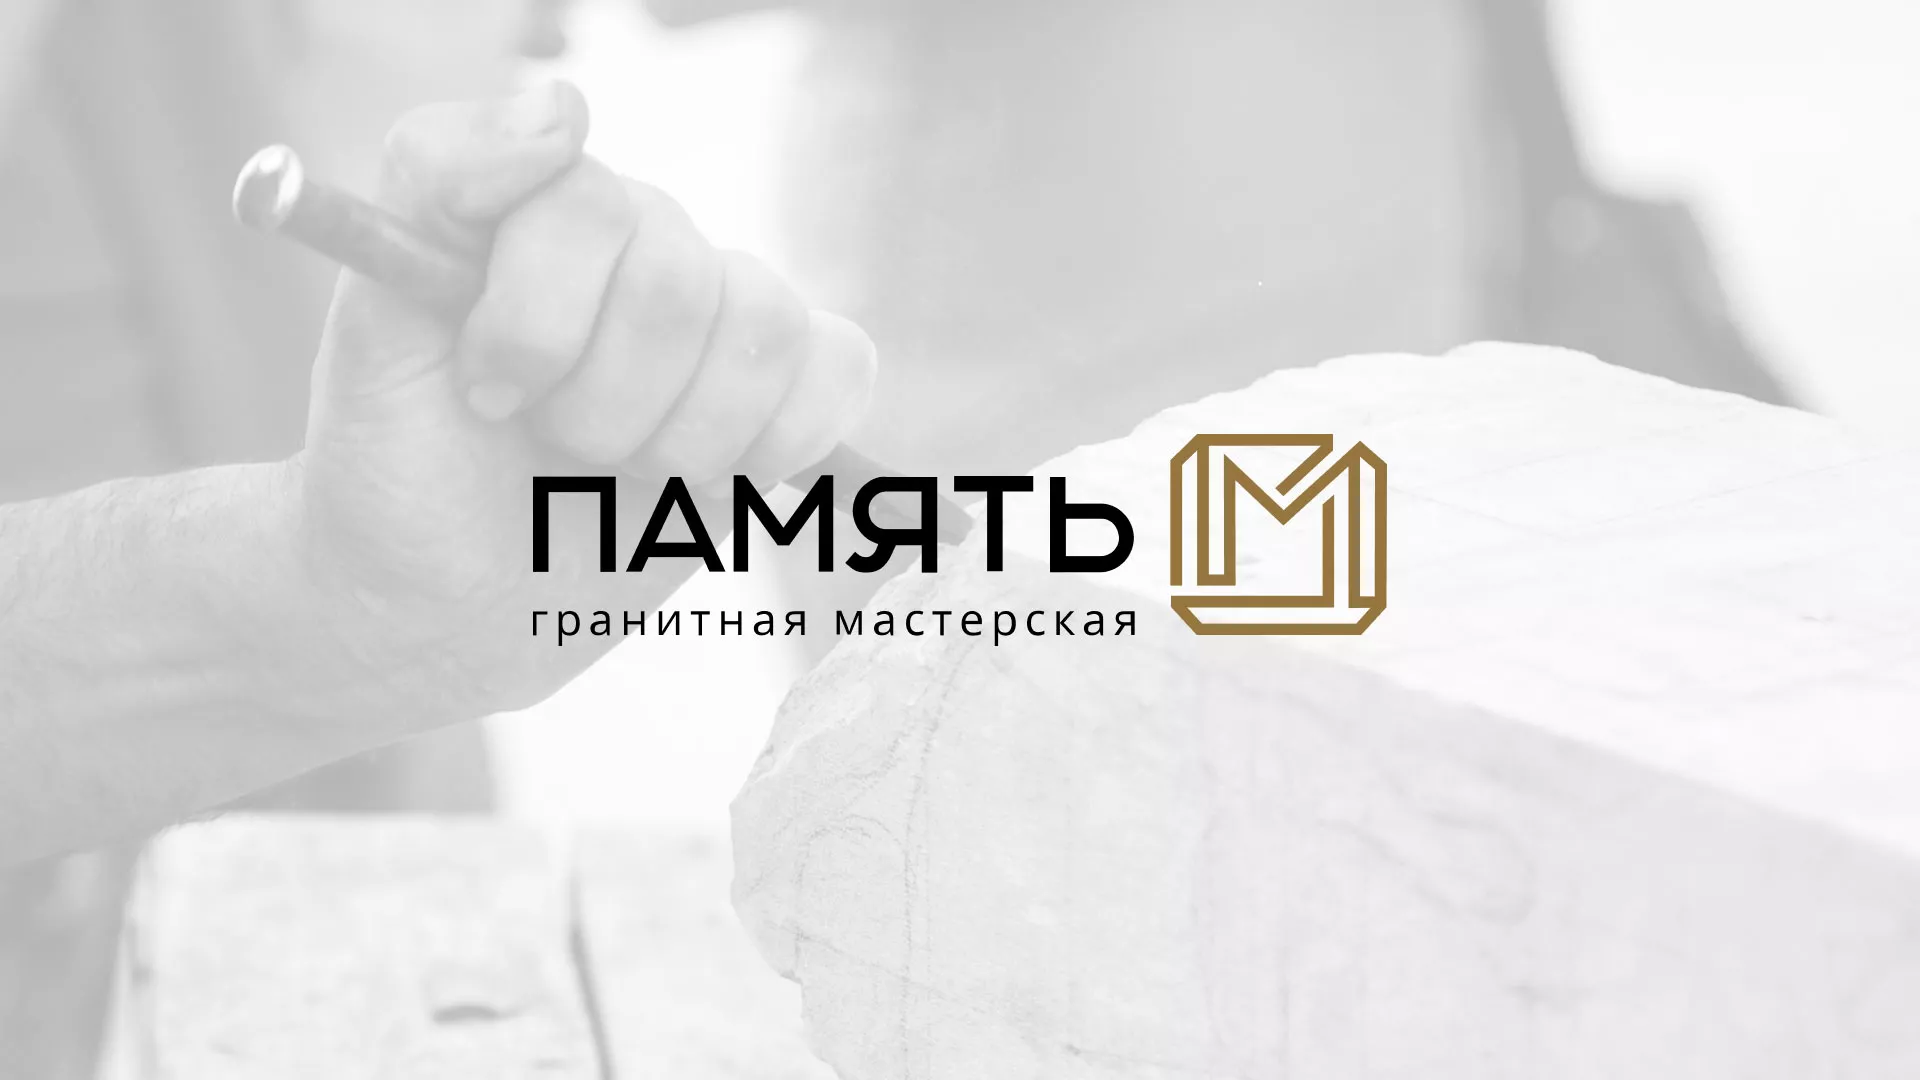 Разработка логотипа и сайта компании «Память-М» в Мамадыше